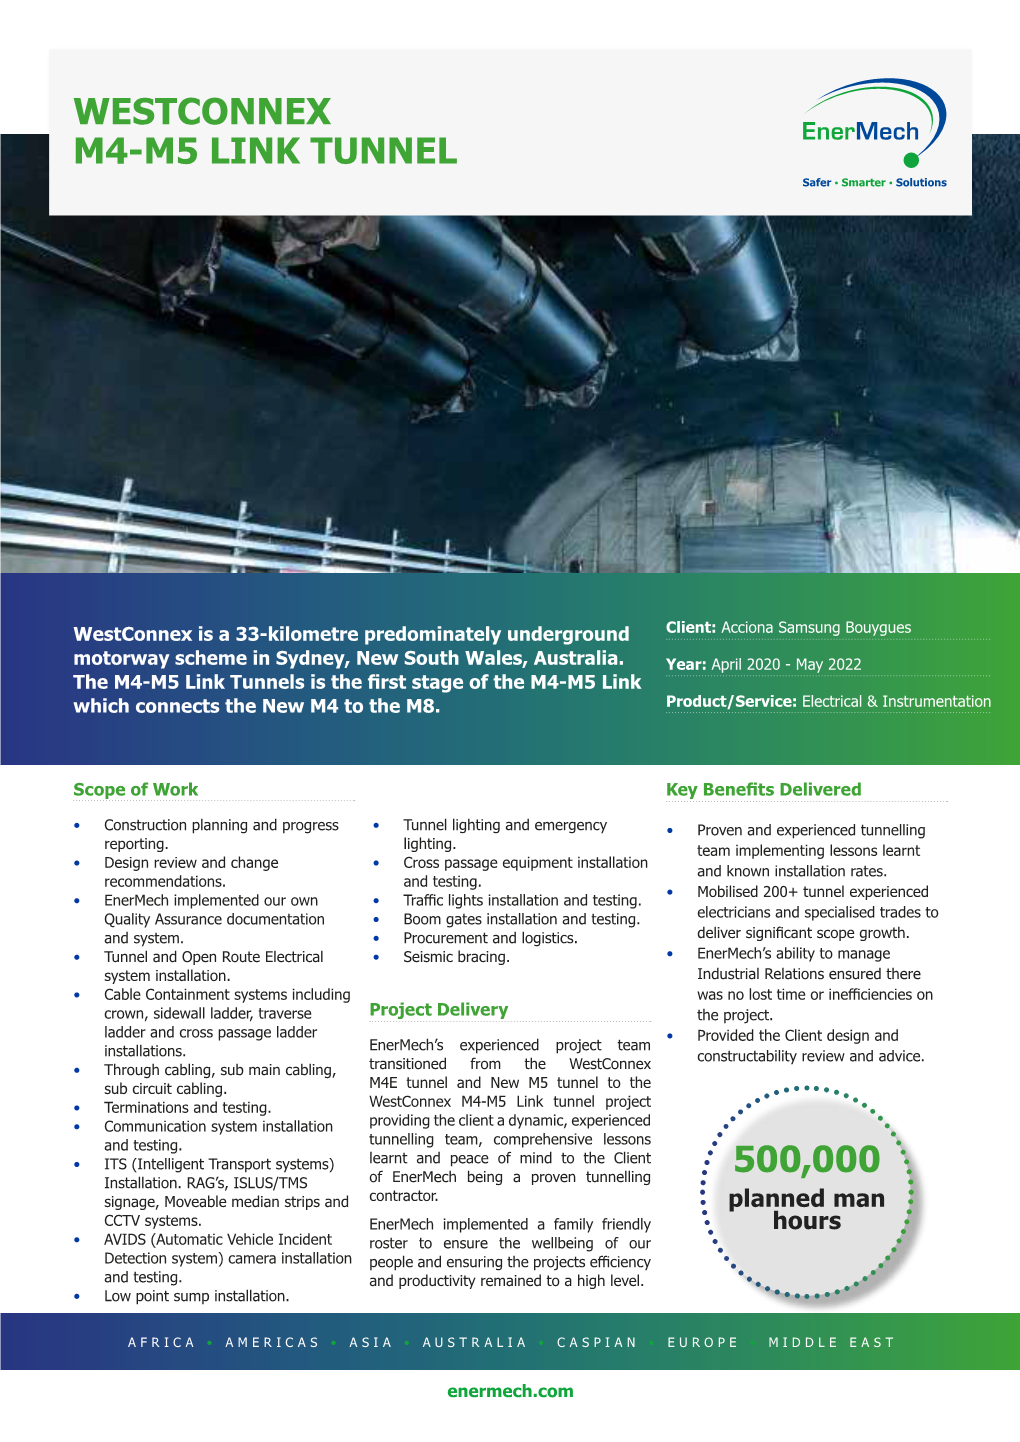 Westconnex M4-M5 Link Tunnel 500,000